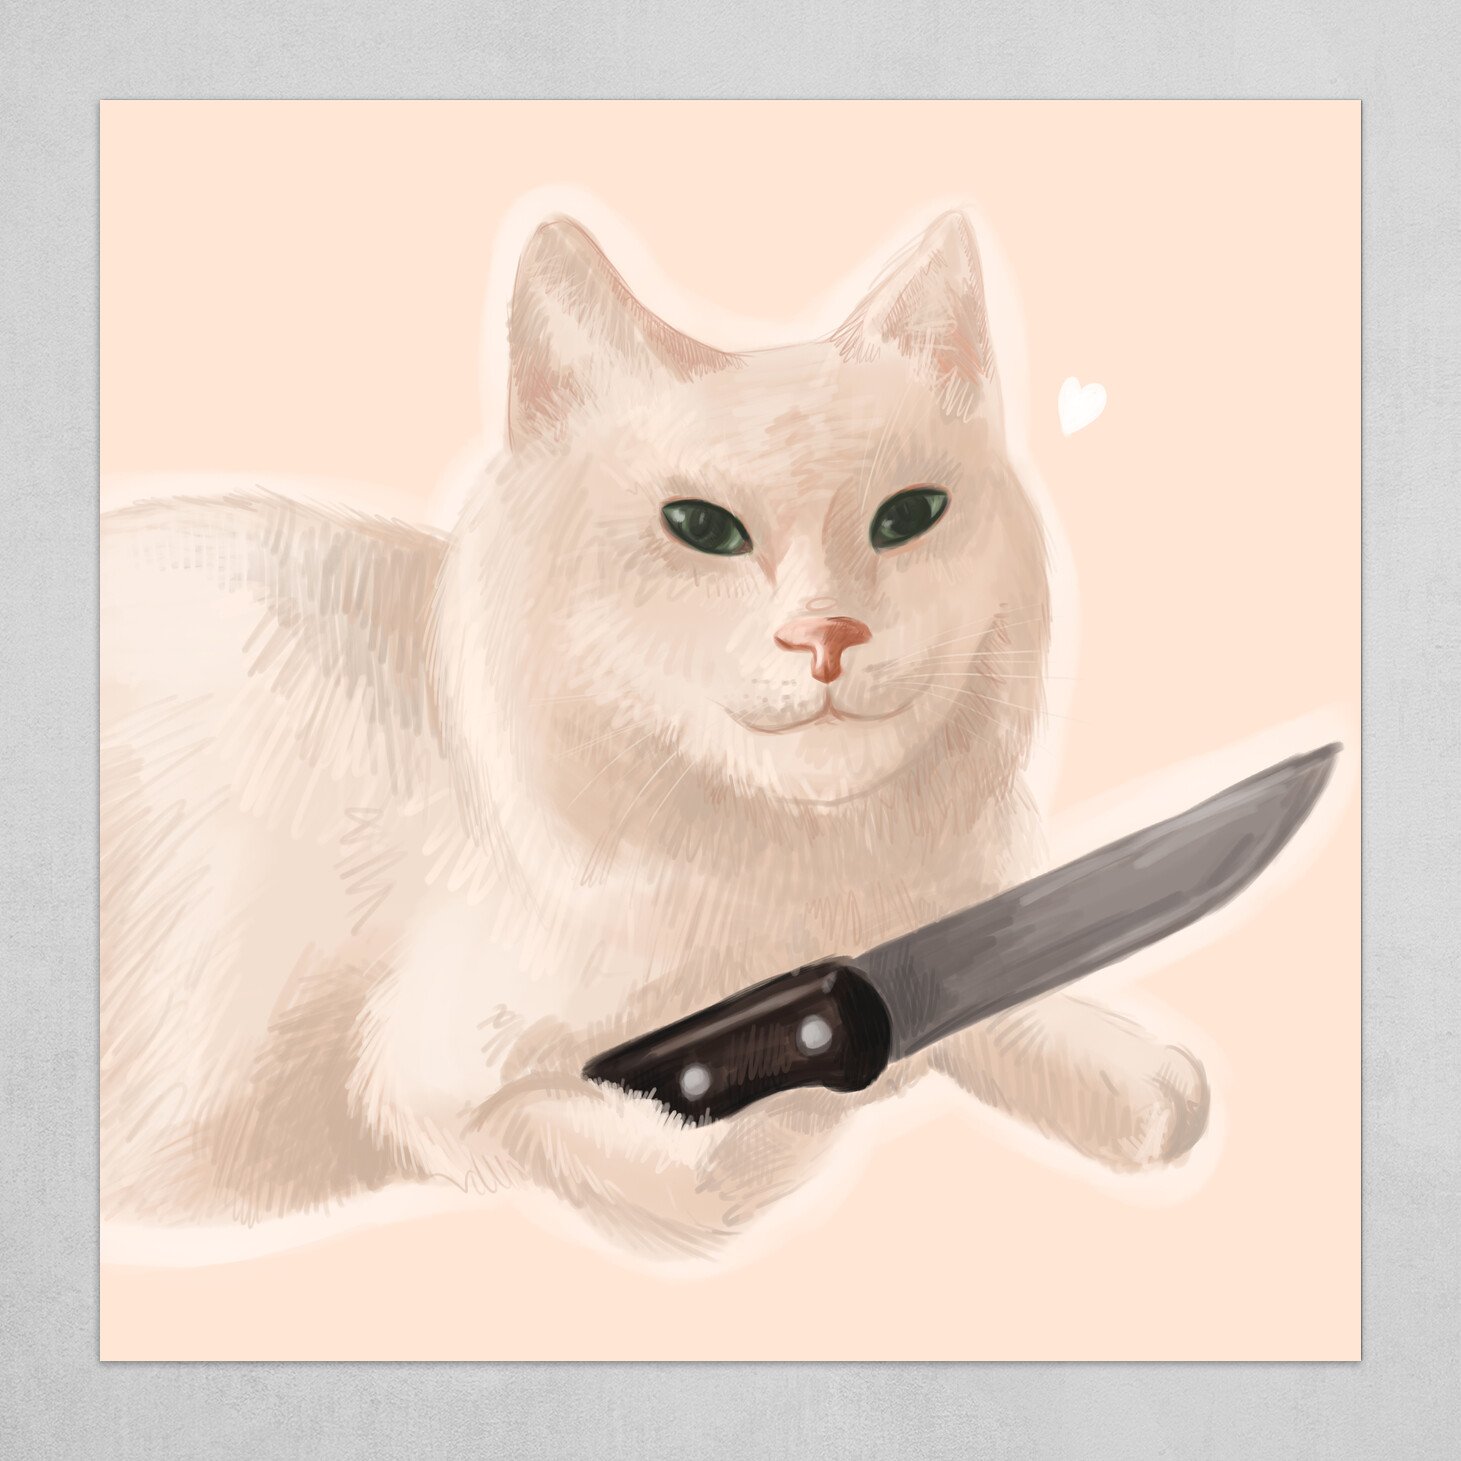 Mèo cầm dao, mèo cầm phóng lợn, hài hước - Hãy xem những hình ảnh siêu dễ thương và hài hước về chú mèo đang cầm dao và phóng lợn. Điều đó chứng tỏ, đôi khi ngôi nhà của bạn cũng đầy ắp những điều thú vị mà bạn chưa khám phá hết được.